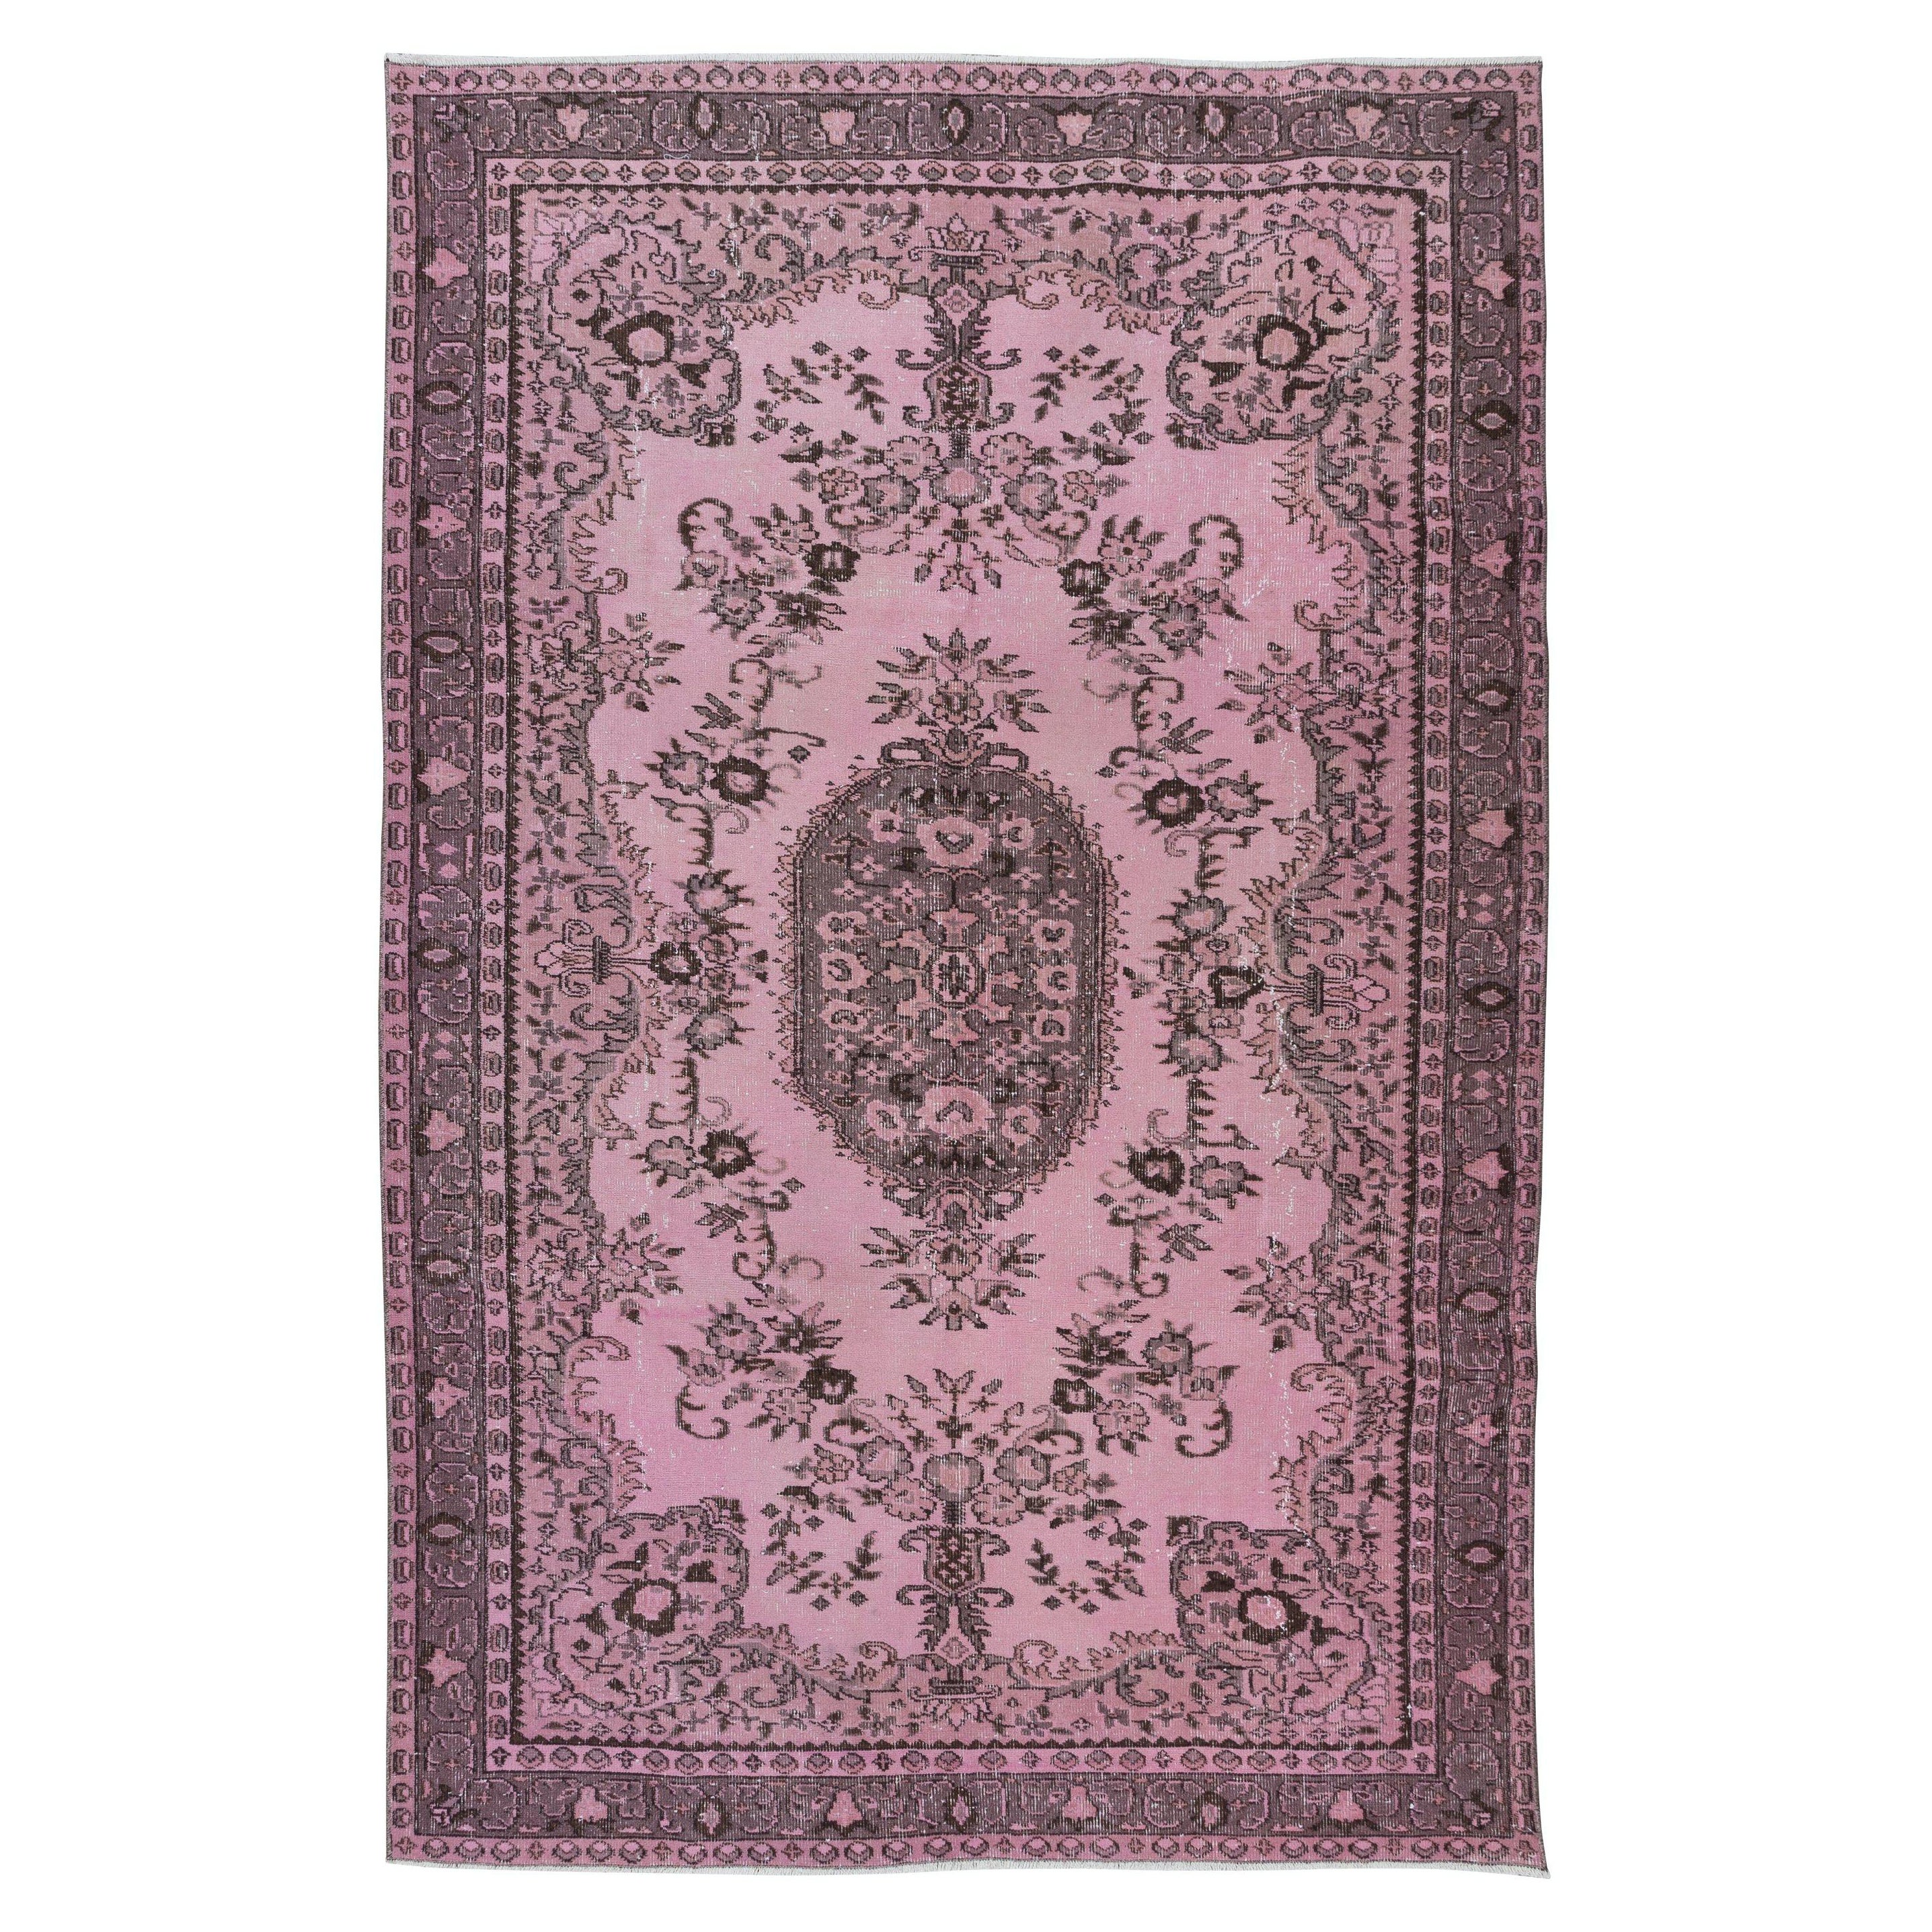 5.6x8.6 Ft Rosa Teppich für modernes Interieur, handgefertigter türkischer dekorativer Teppich